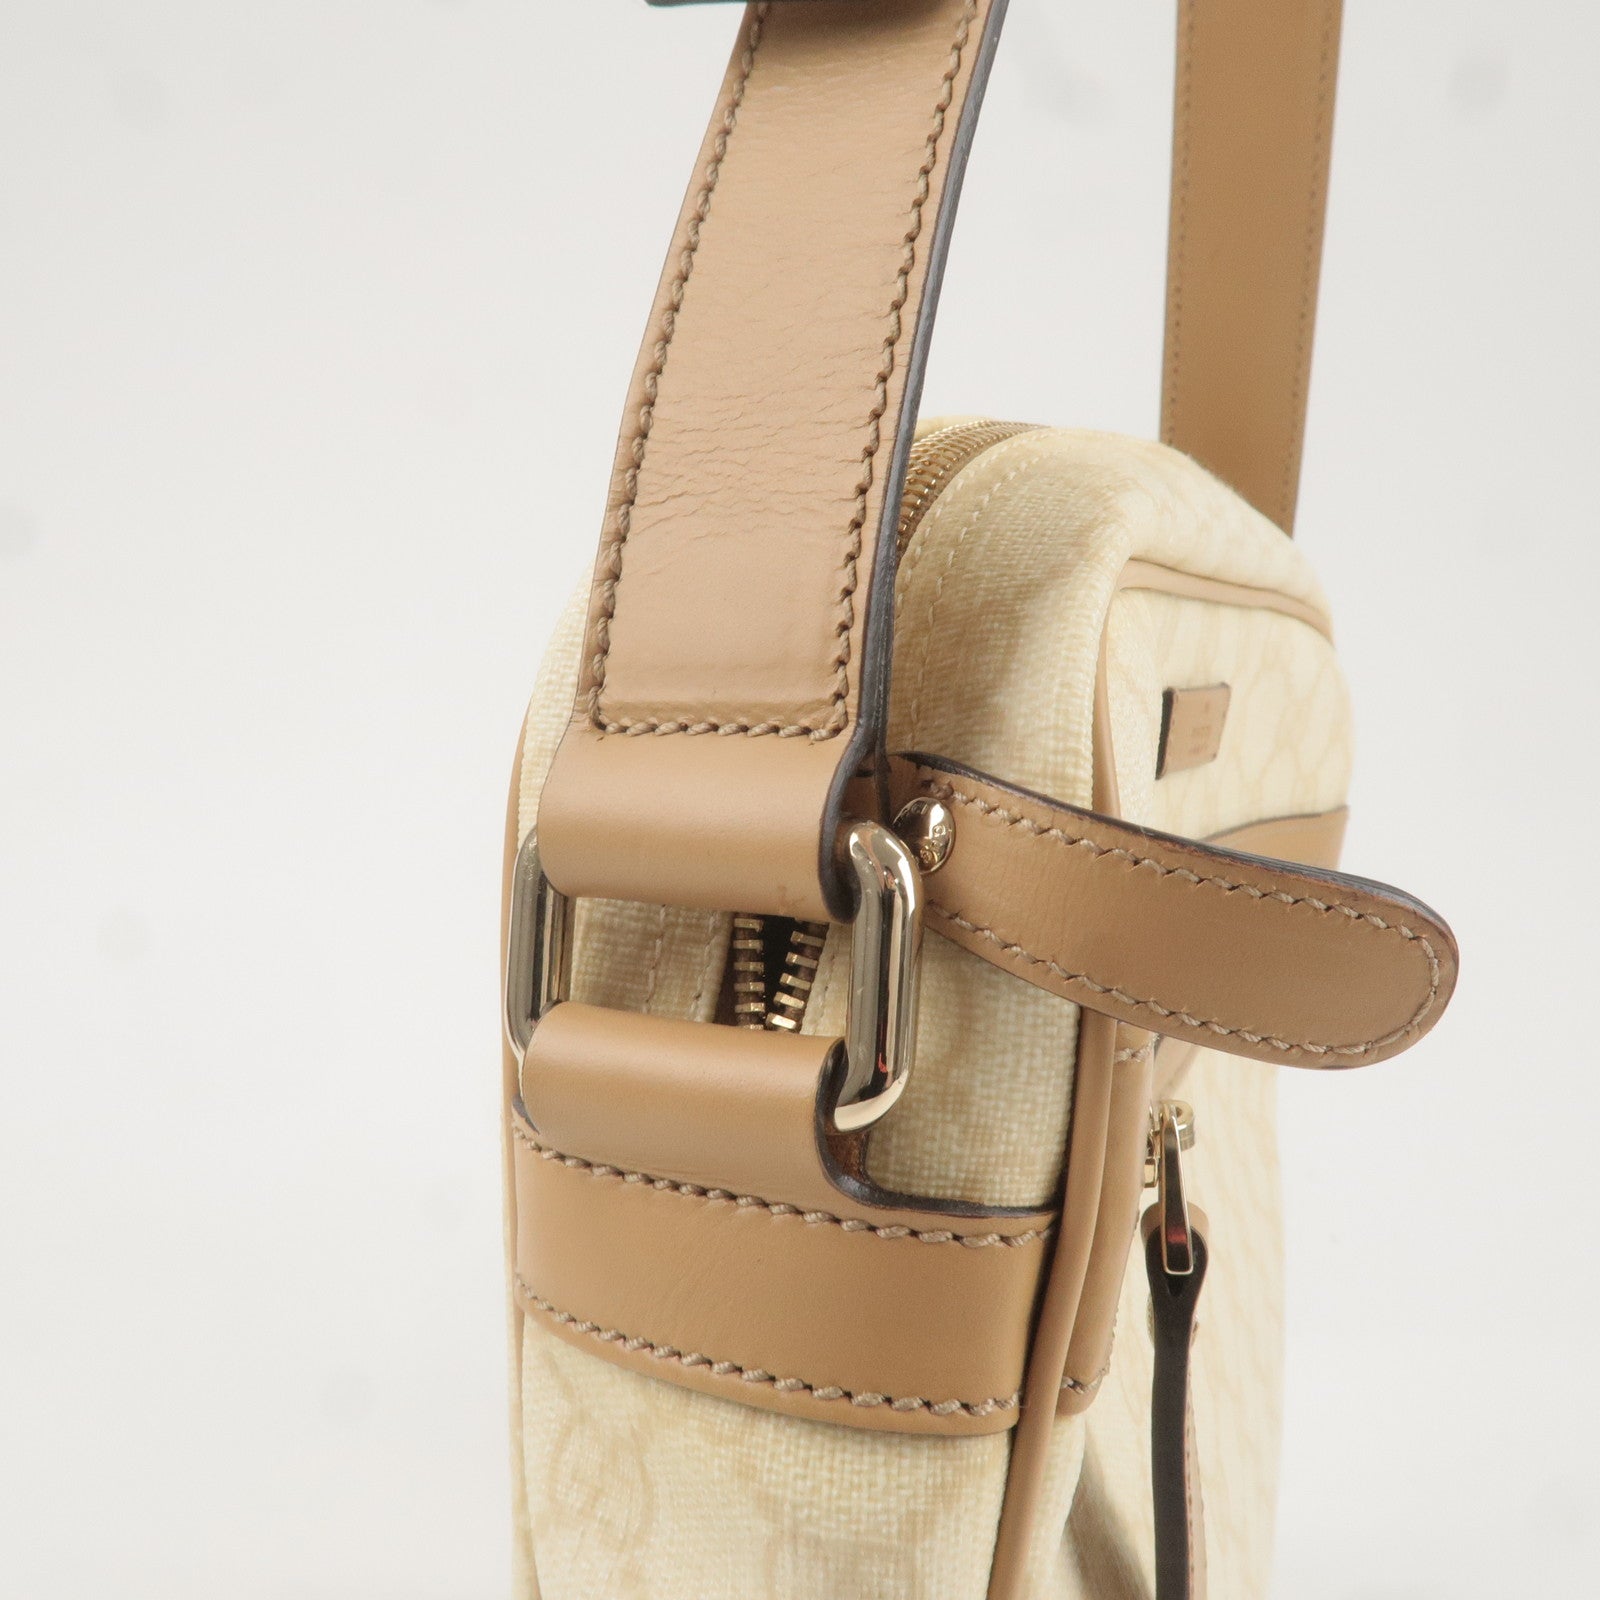 GUCCI-GG-Supreme-Leather-Shoulder-Bag-Beige-Ivory-201448 – dct